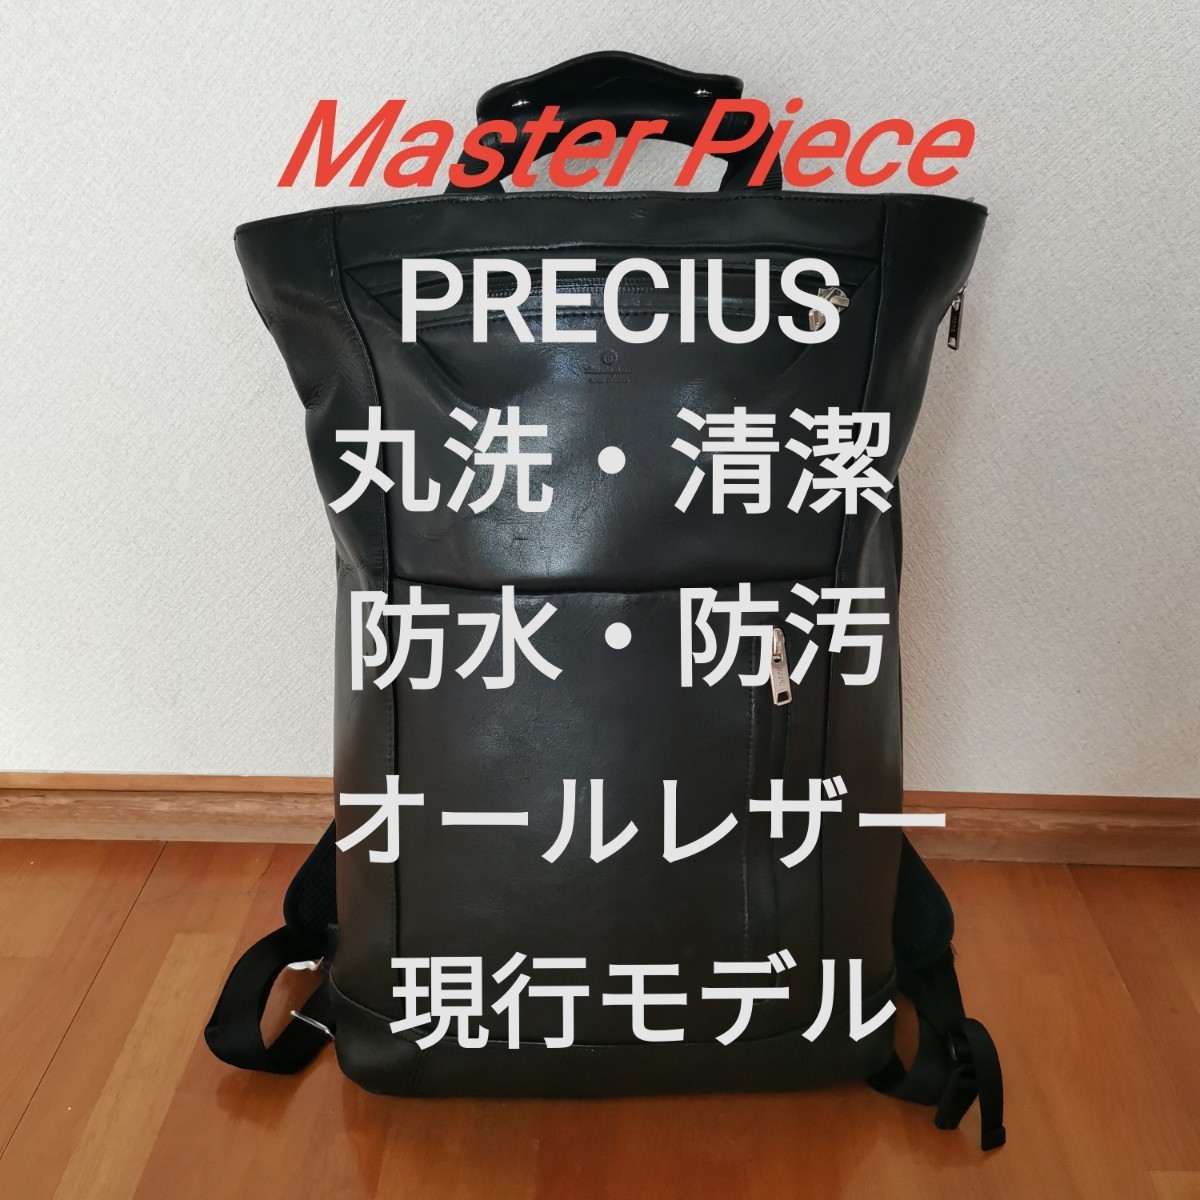 【丸洗・清潔・フルメンテ】Master Piece PRECIUS 現行モデル No.02211 オールレザー